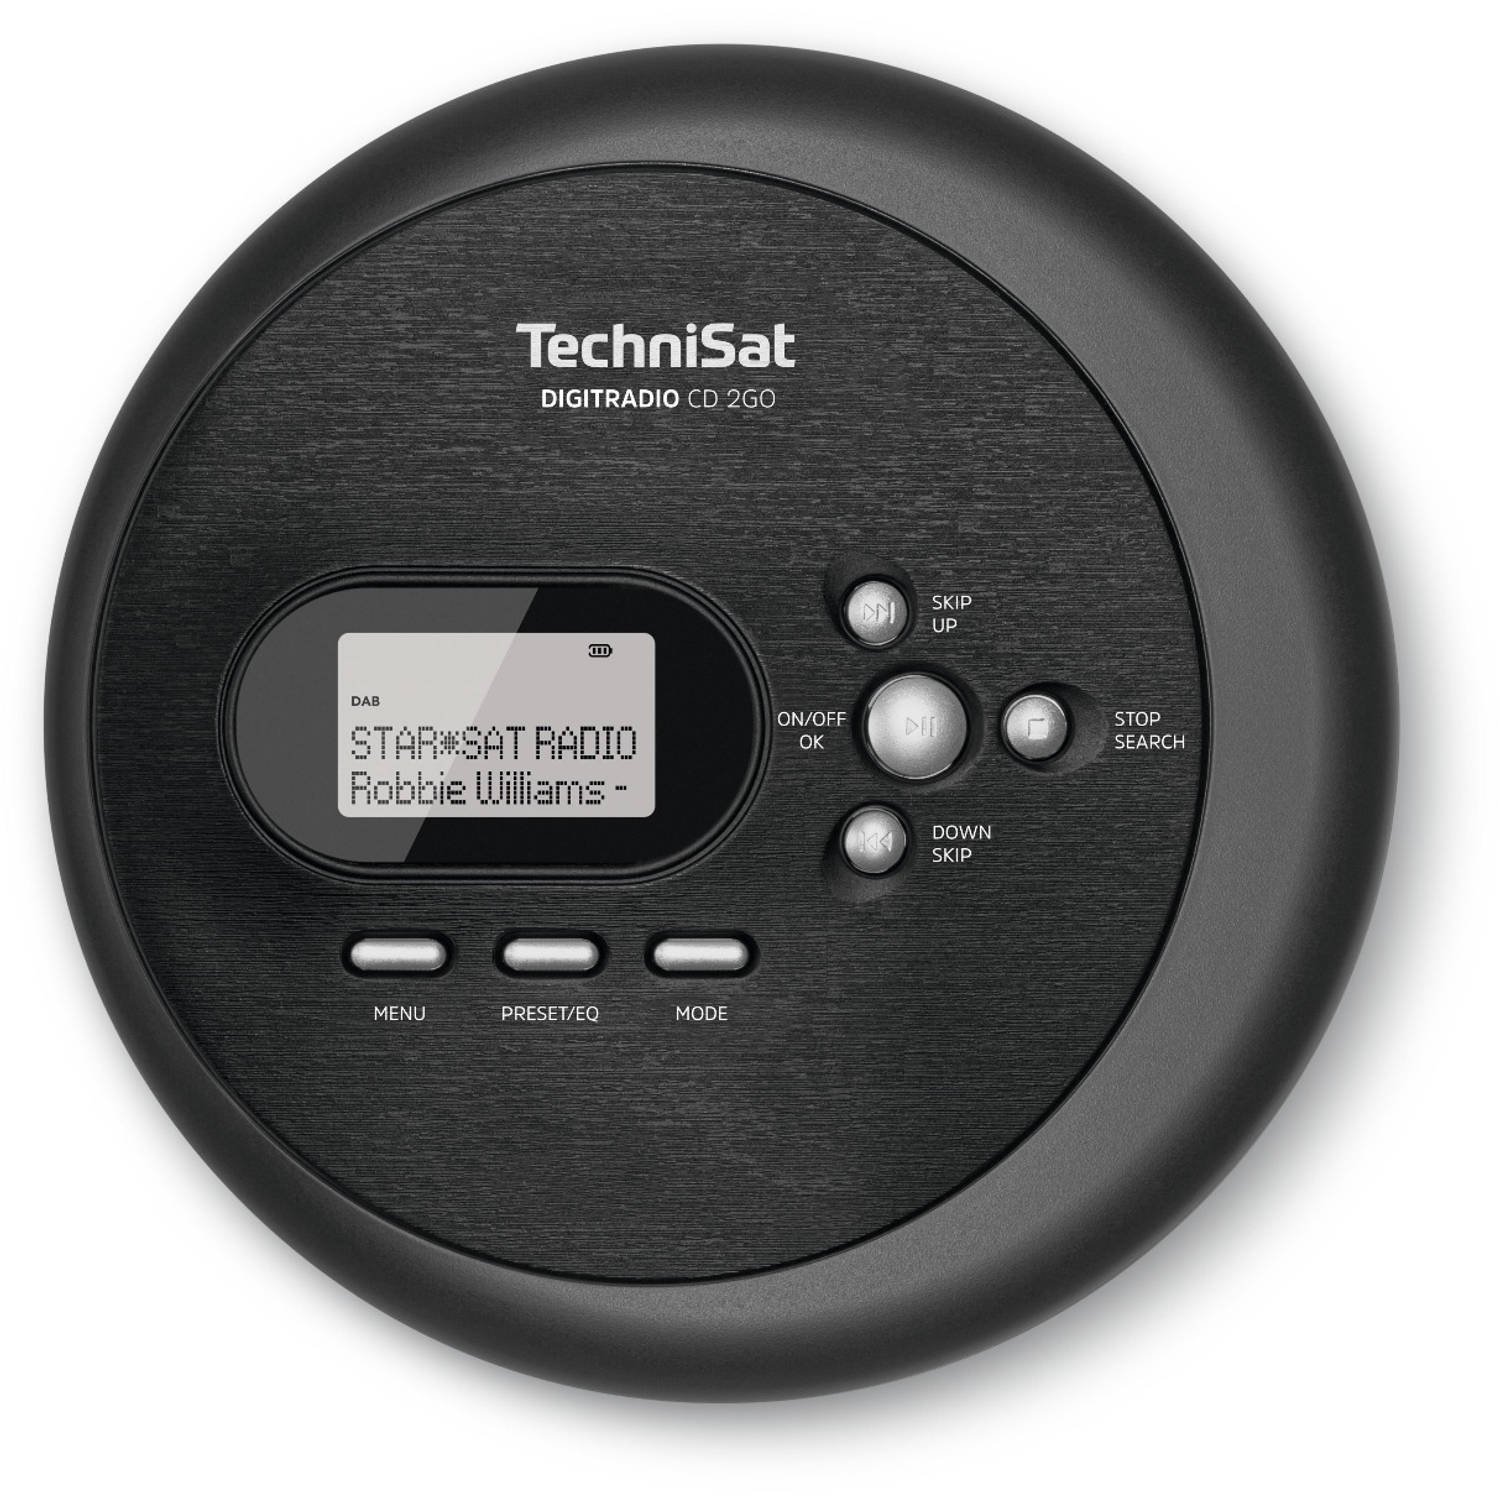 TechniSat Digitradio CD 2GO dab radio